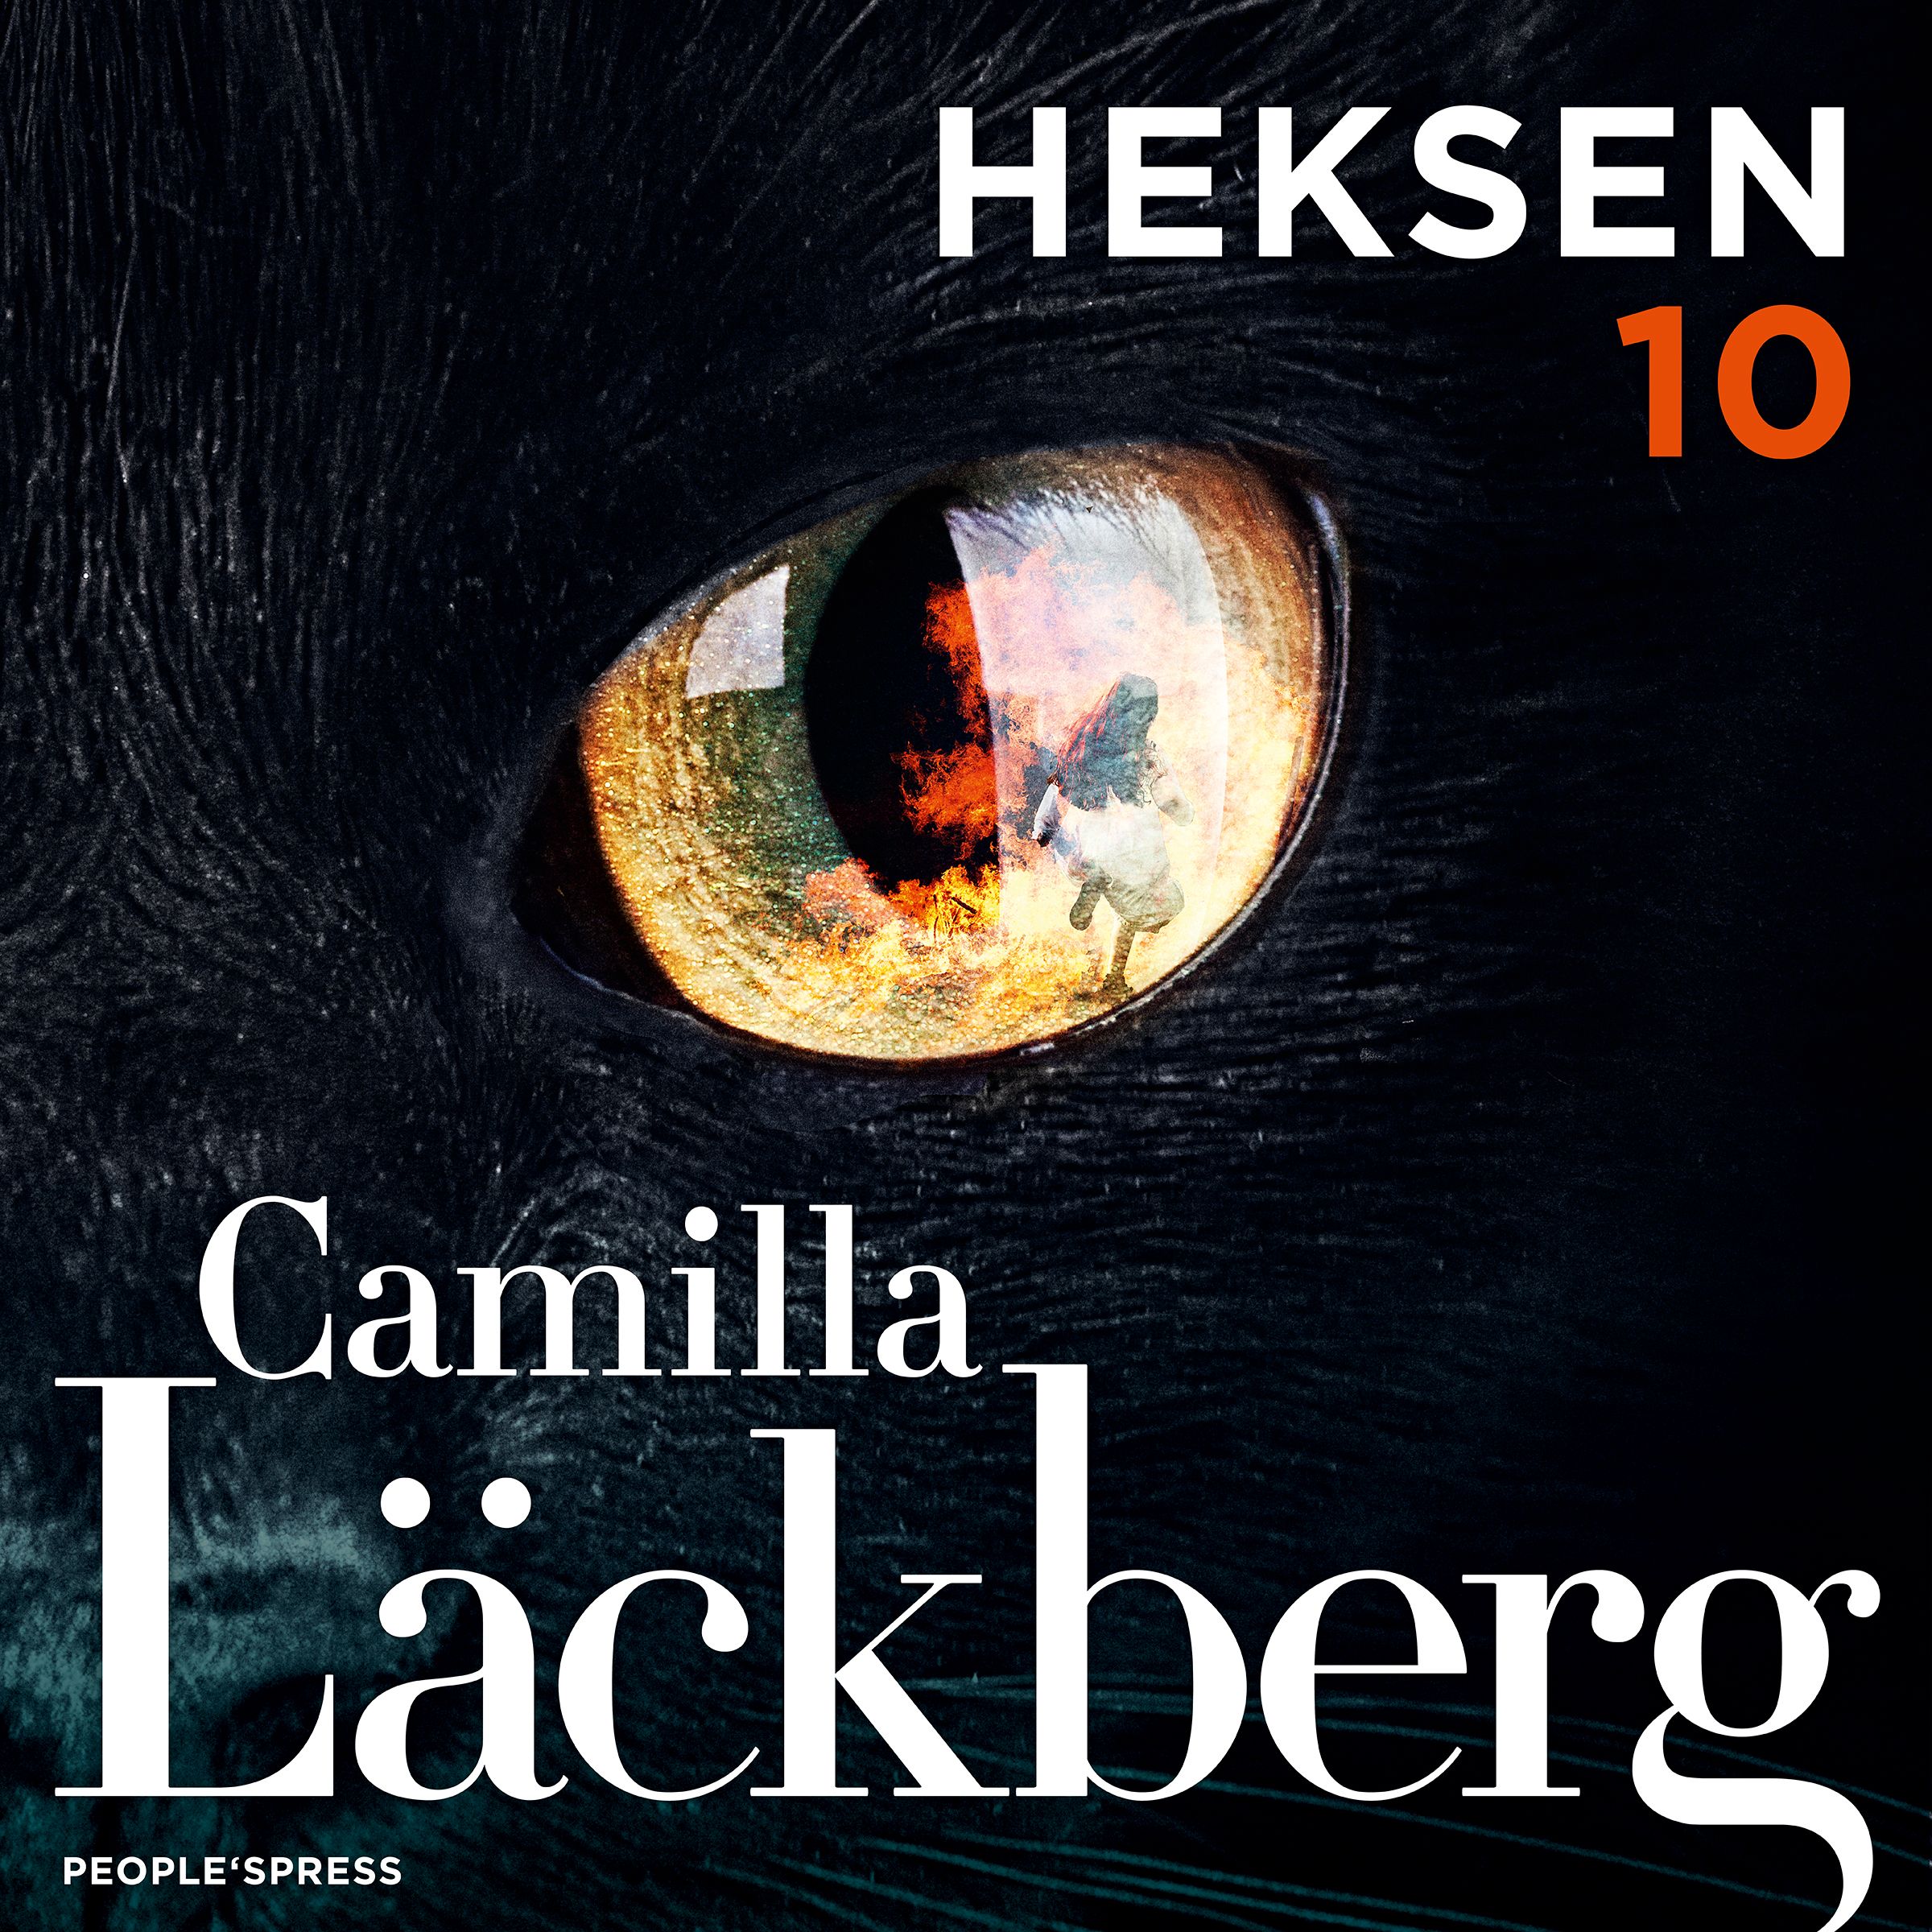 Heksen, audiobook by Camilla Läckberg